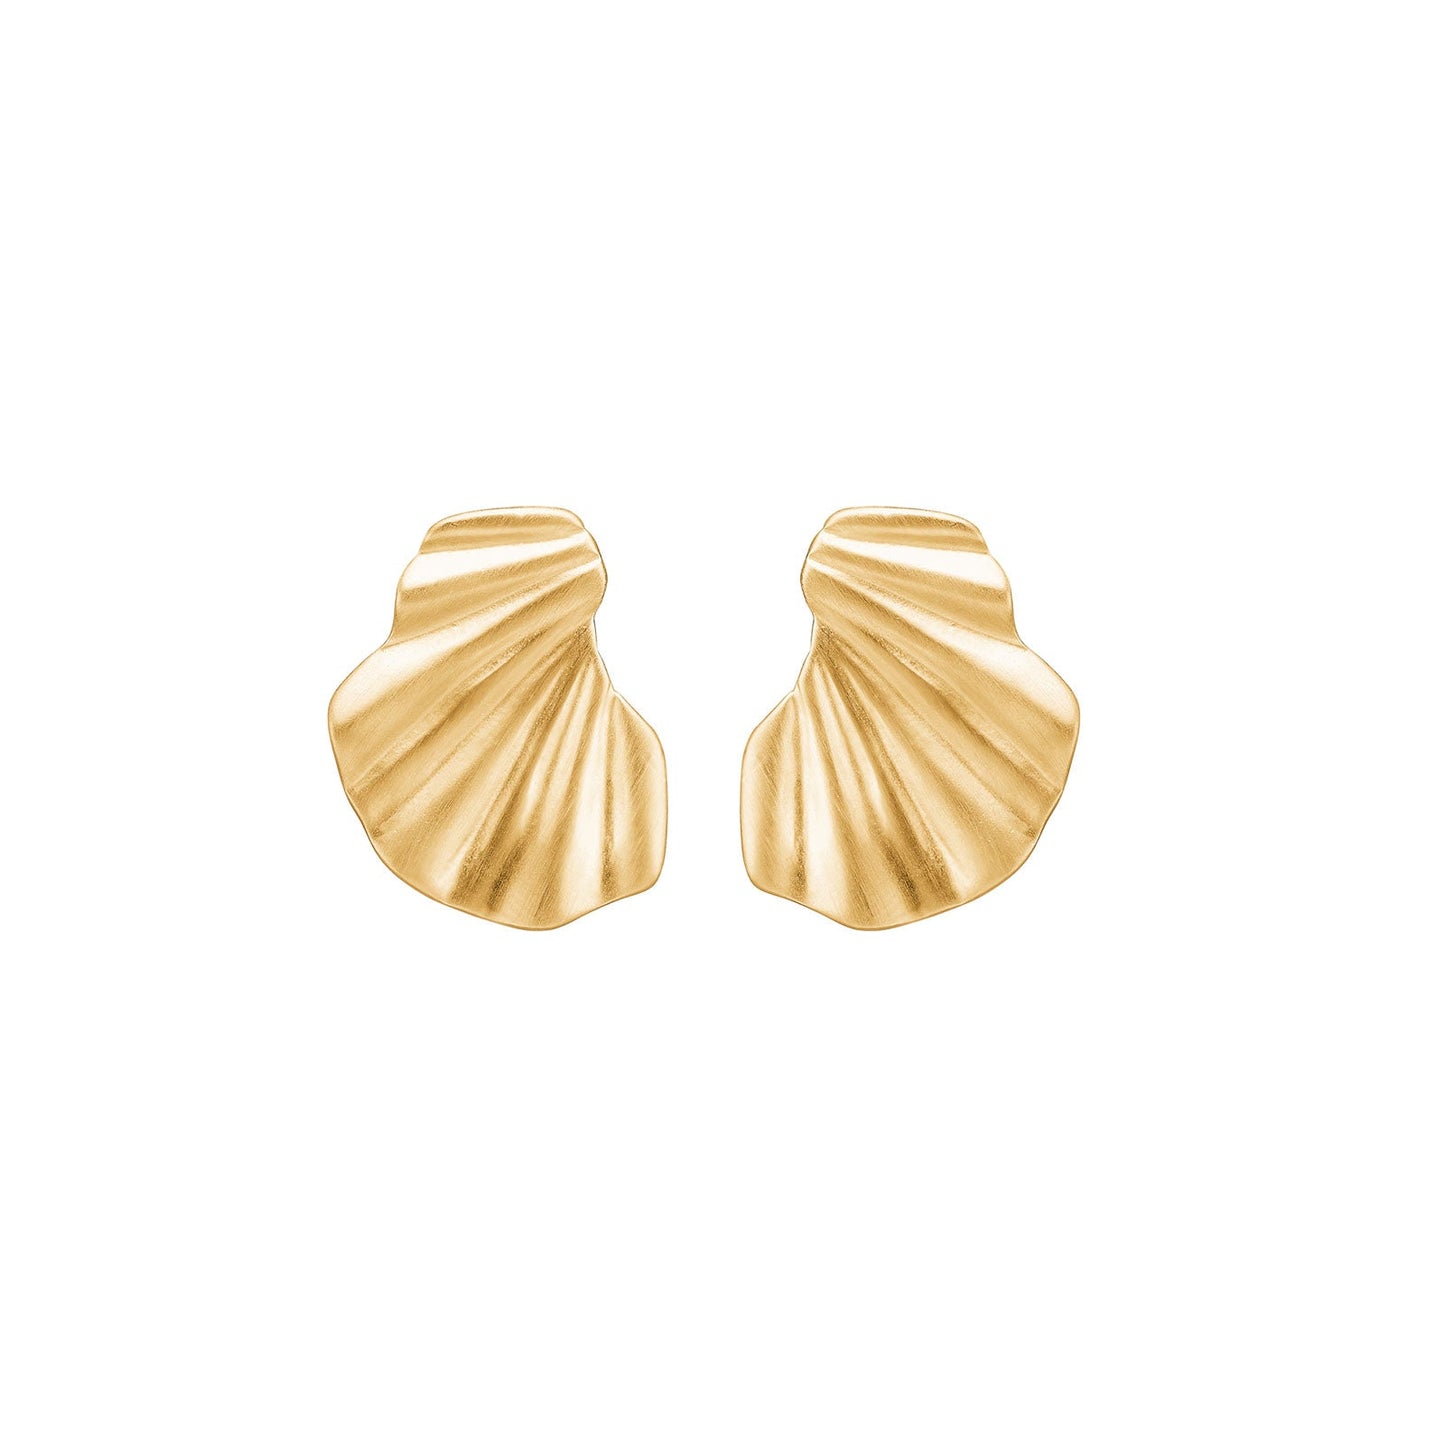 Wave earring